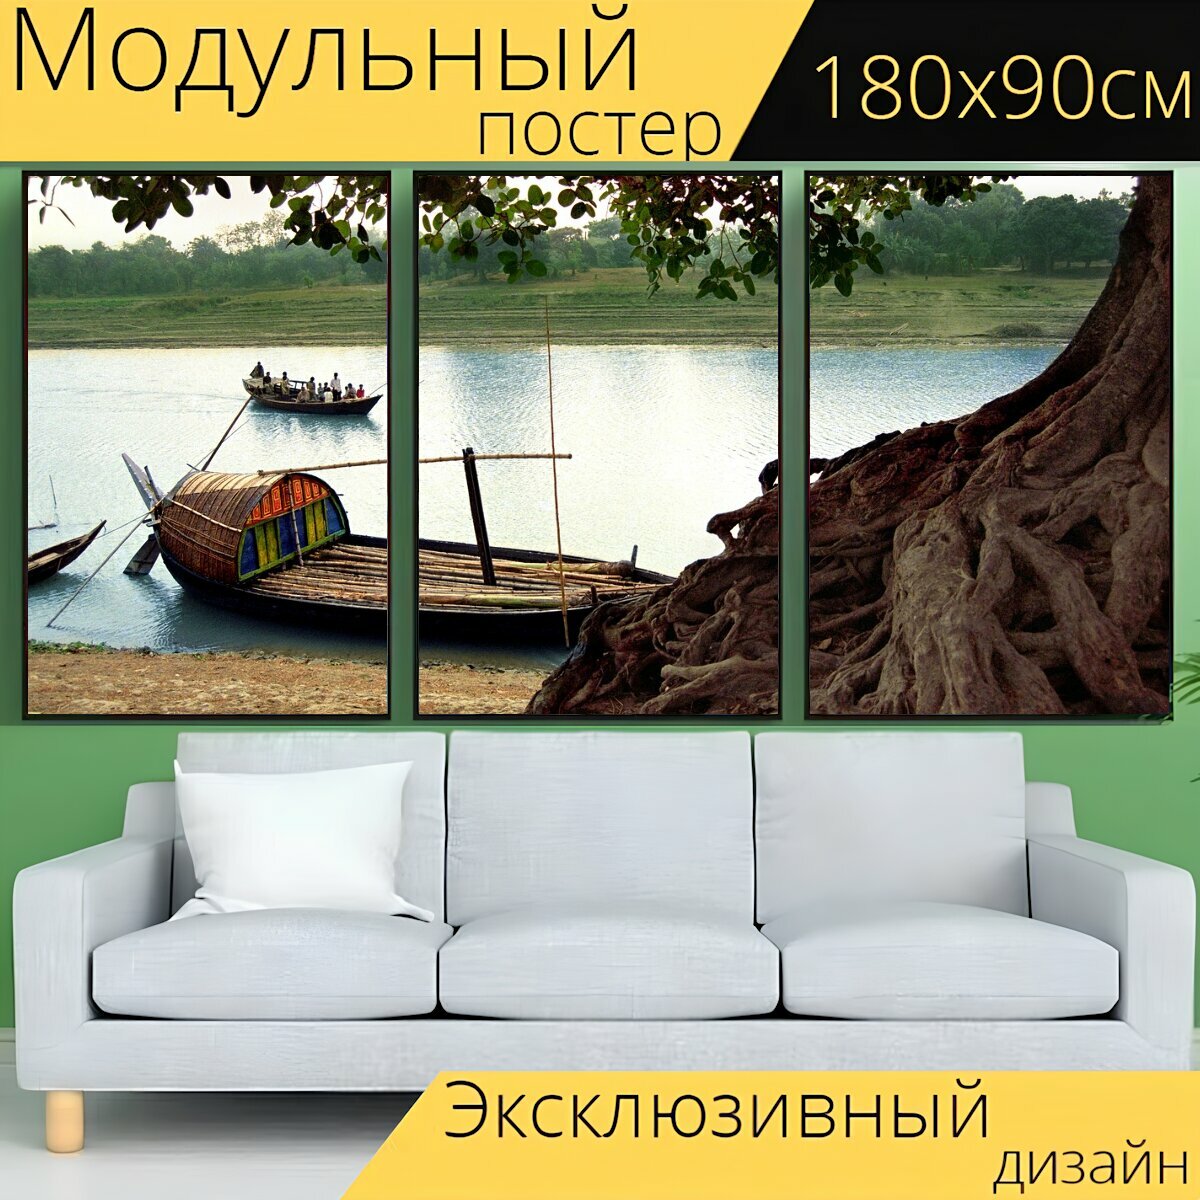 Модульный постер "Бангладеш, река, лодка" 180 x 90 см. для интерьера